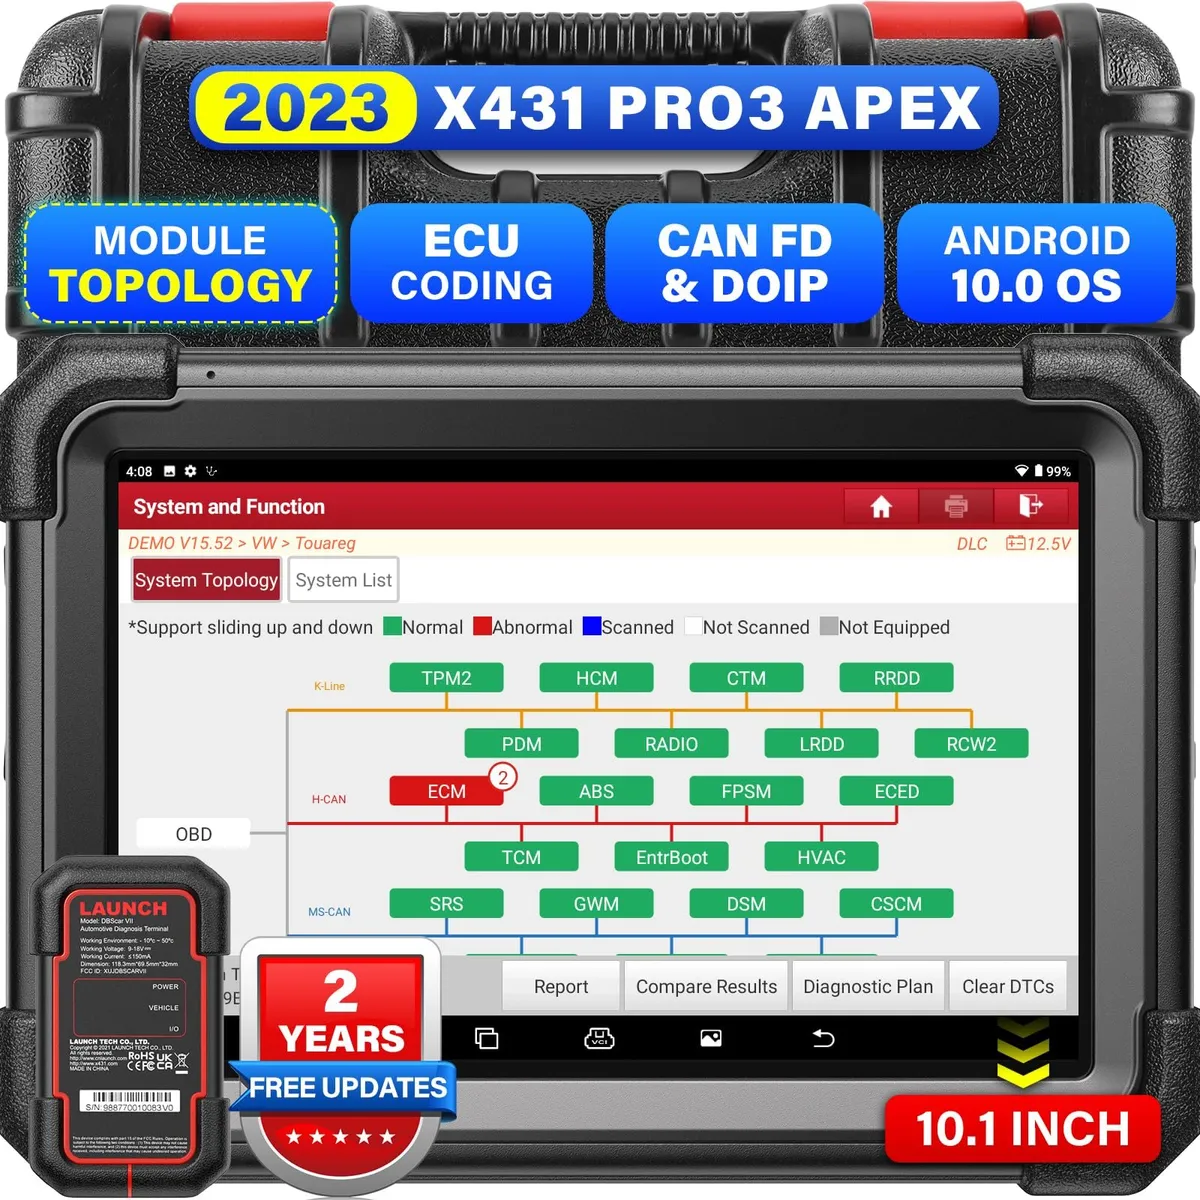 Launch X431 PRO3 APEX 10" Diagnostic Machine - Image 1